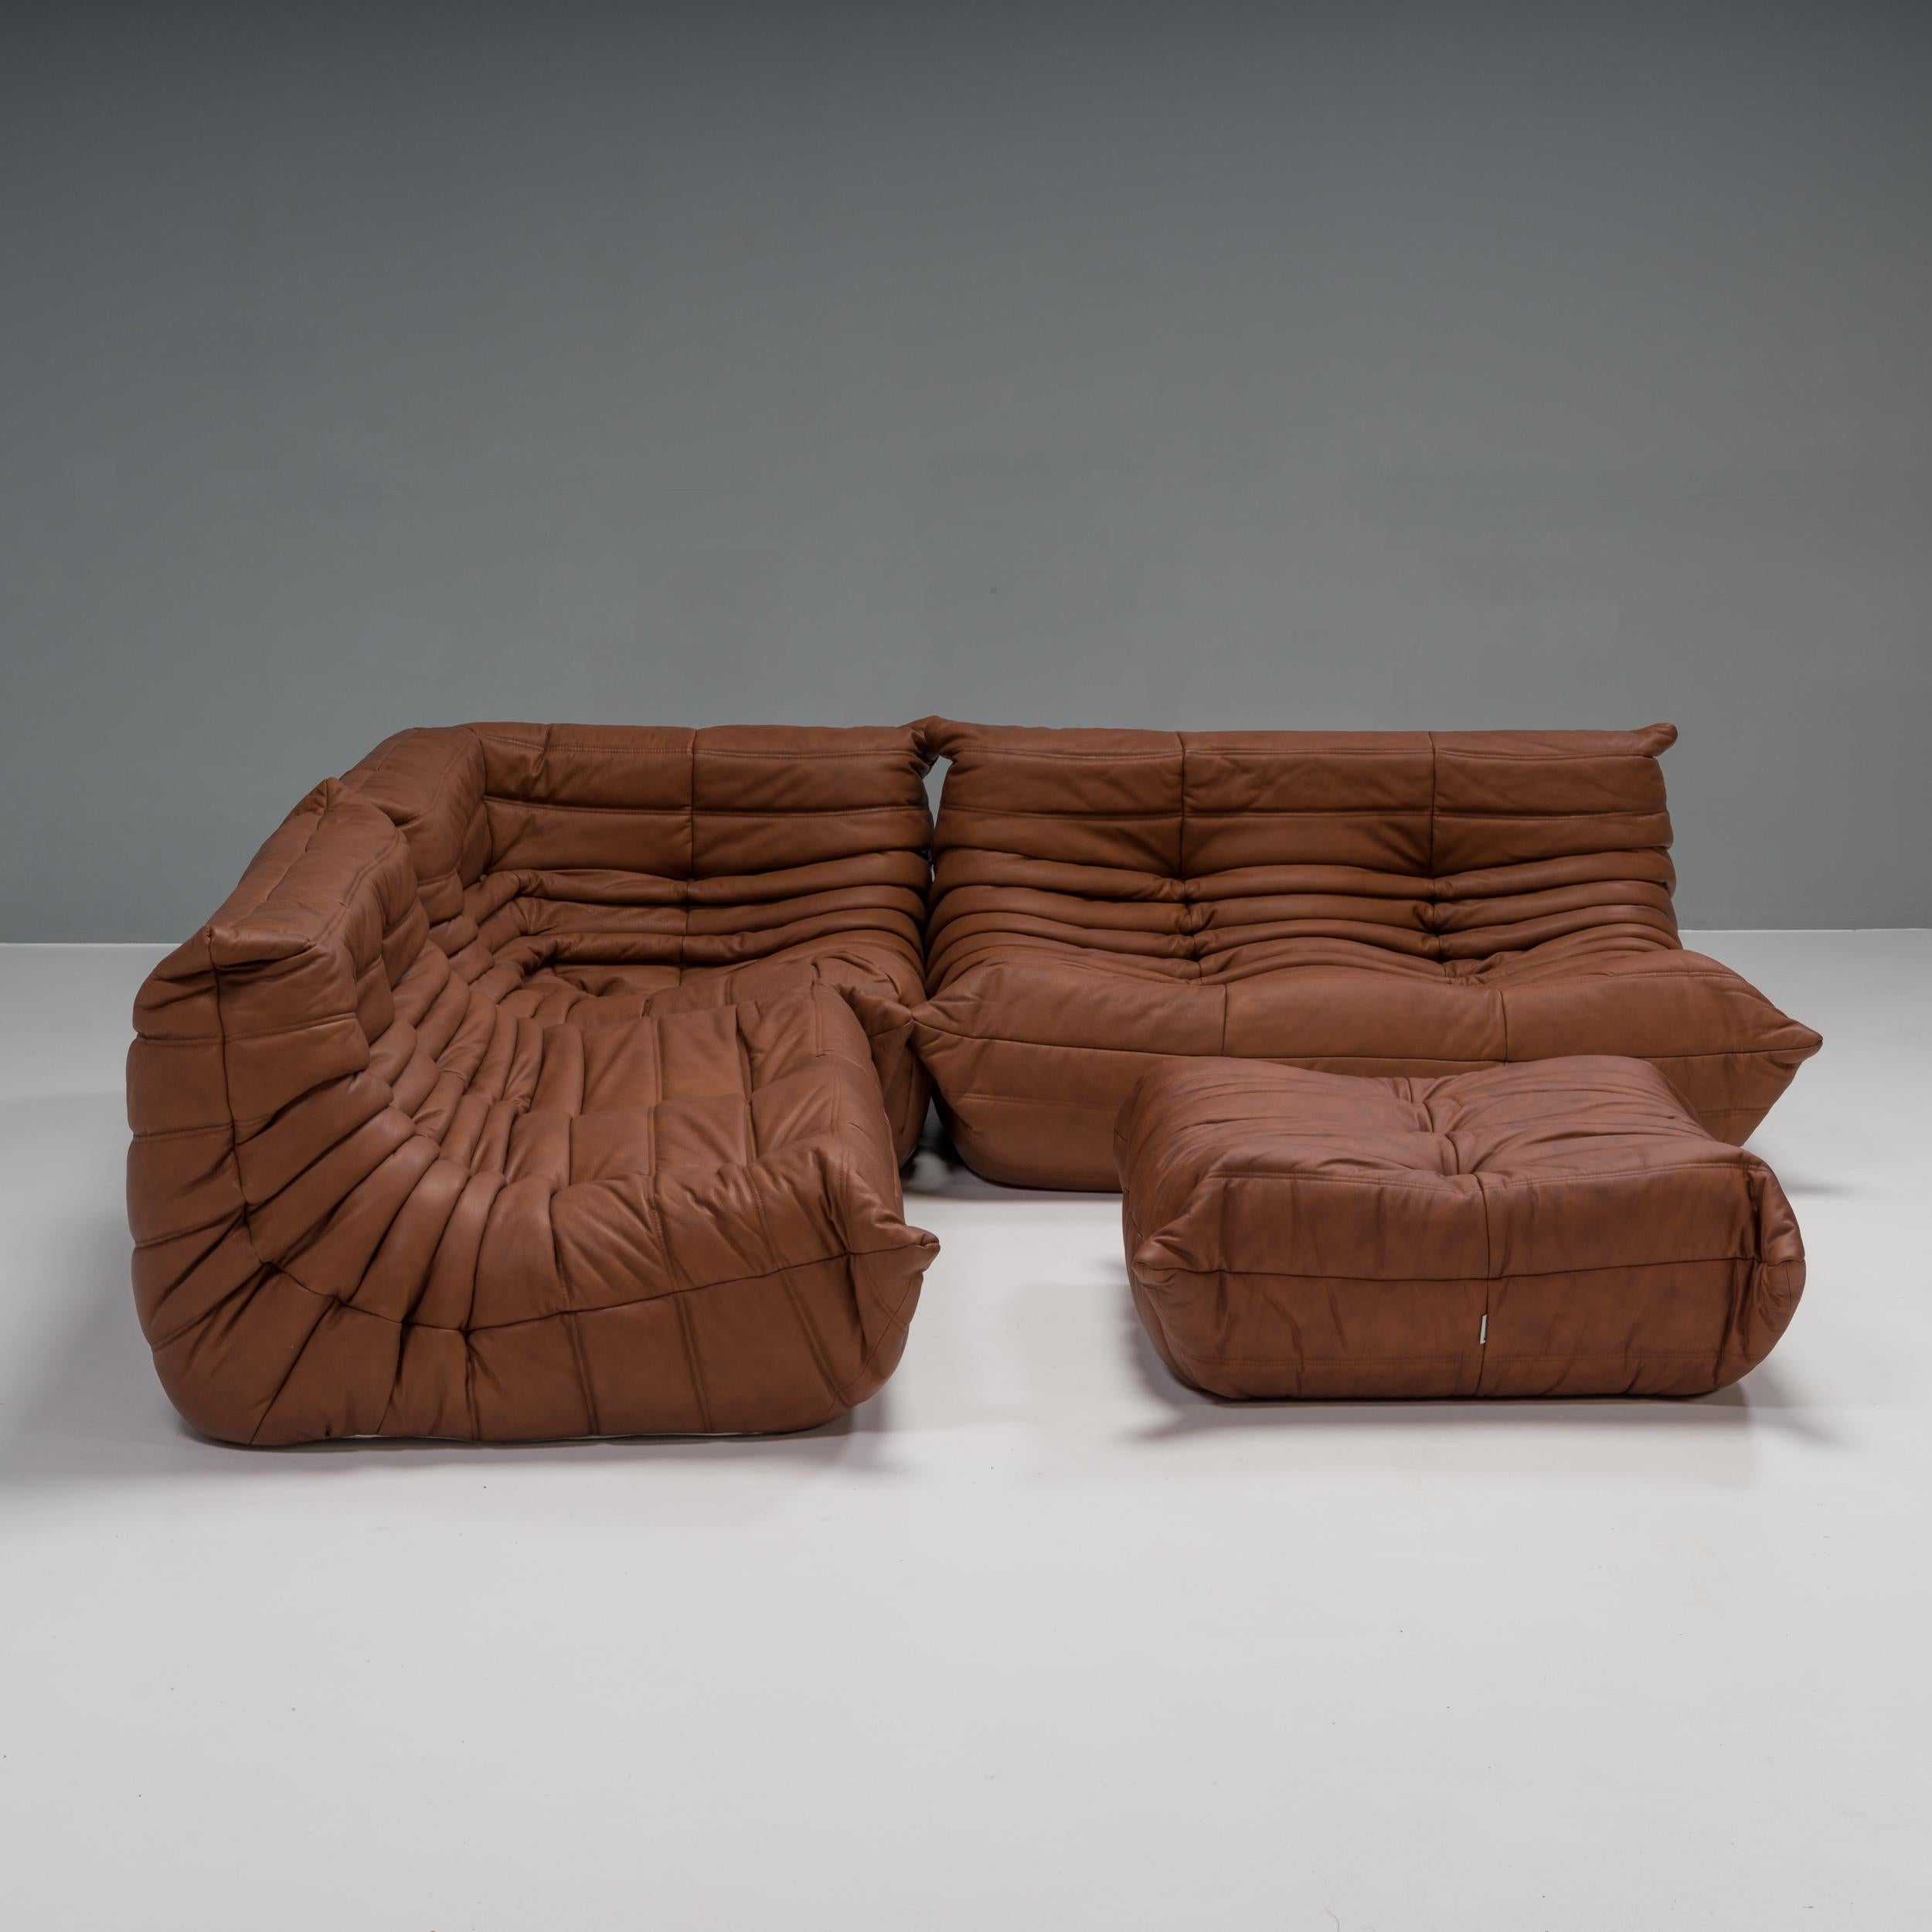 Das ikonische Sofa Togo, ursprünglich von Michel Ducaroy für Ligne Roset im Jahr 1973 entworfen, ist zu einem Designklassiker geworden.

Dieses vierteilige modulare Set ist unglaublich vielseitig und kann zu einem großen Ecksofa konfiguriert oder